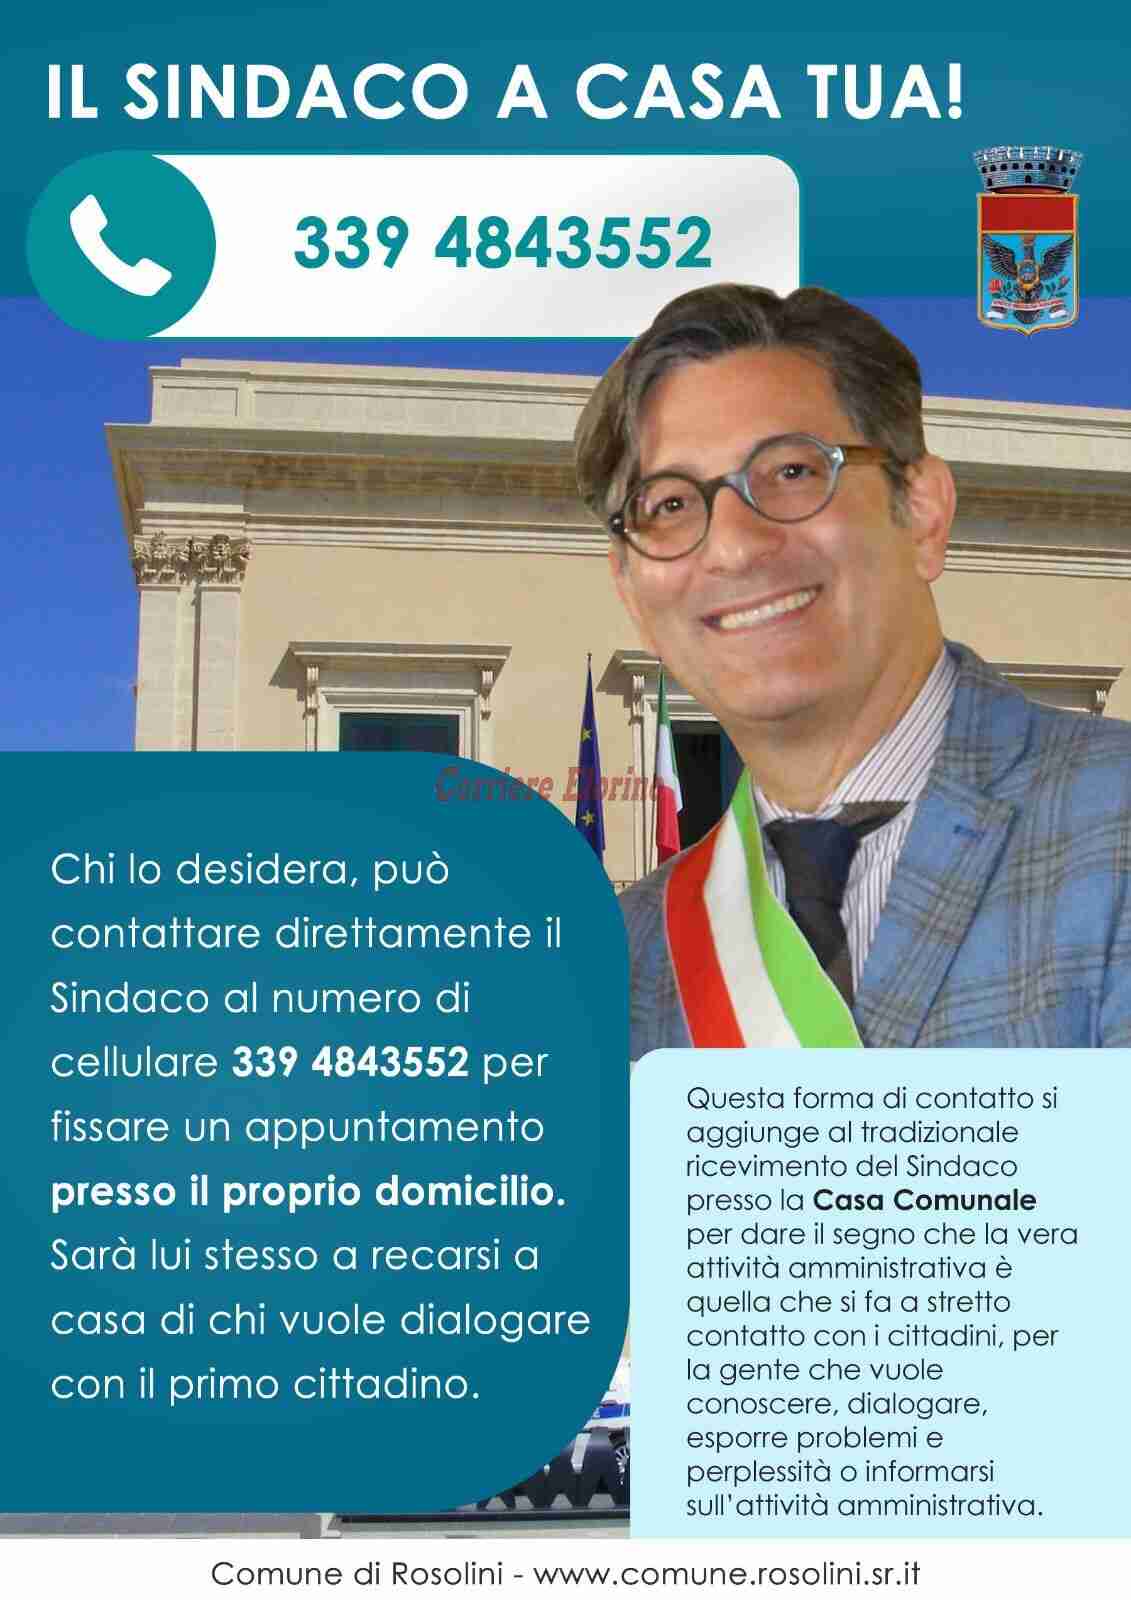 “Il sindaco a casa tua” la campagna del sindaco Corrado Calvo 